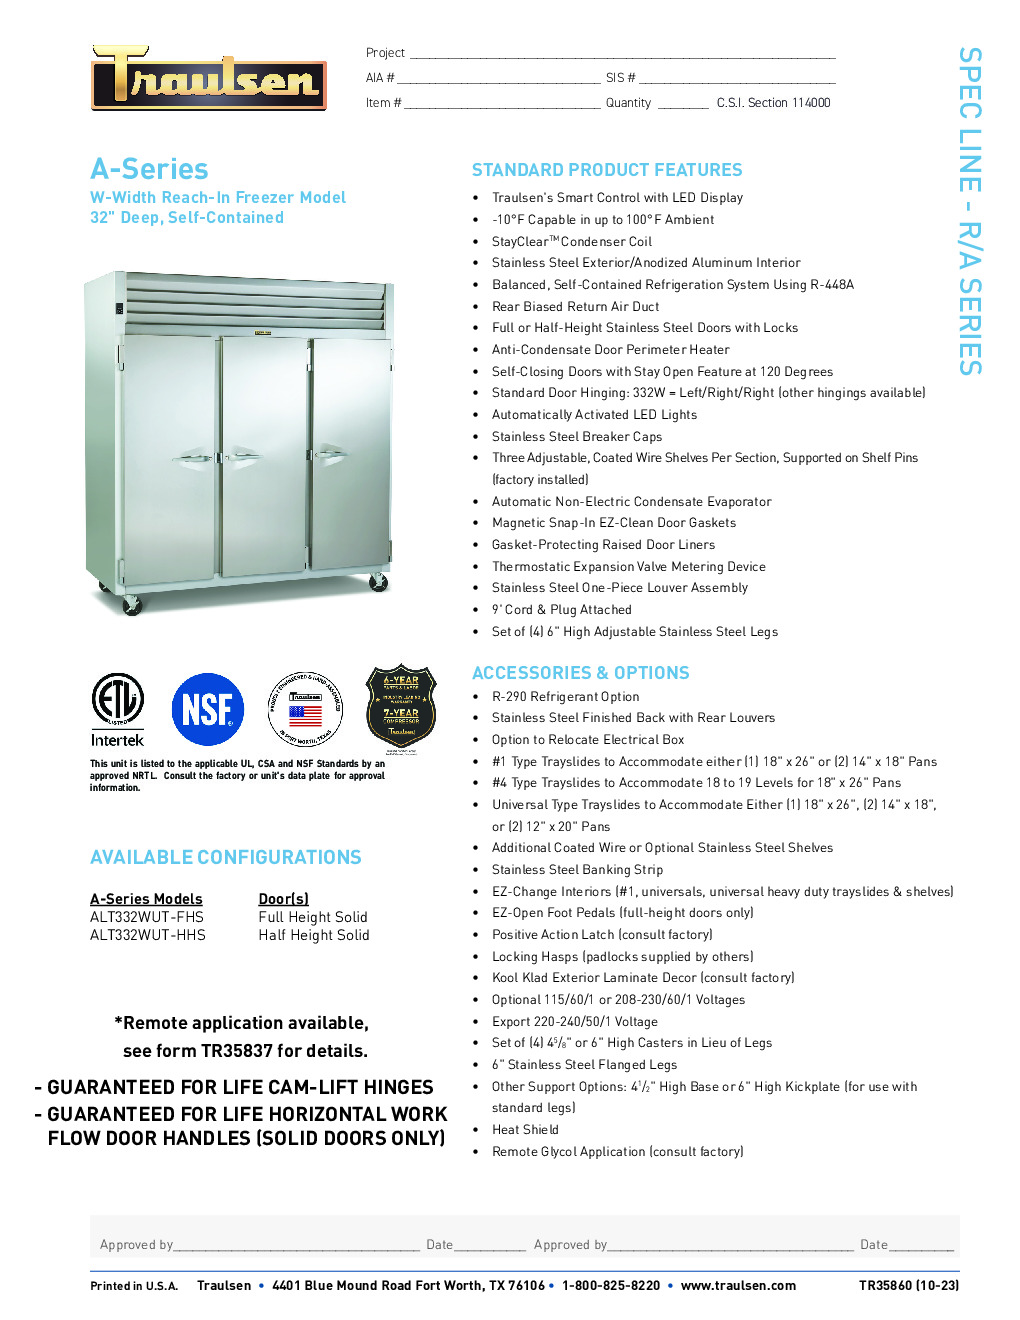 Traulsen ALT332W-HHS Reach-In Freezer